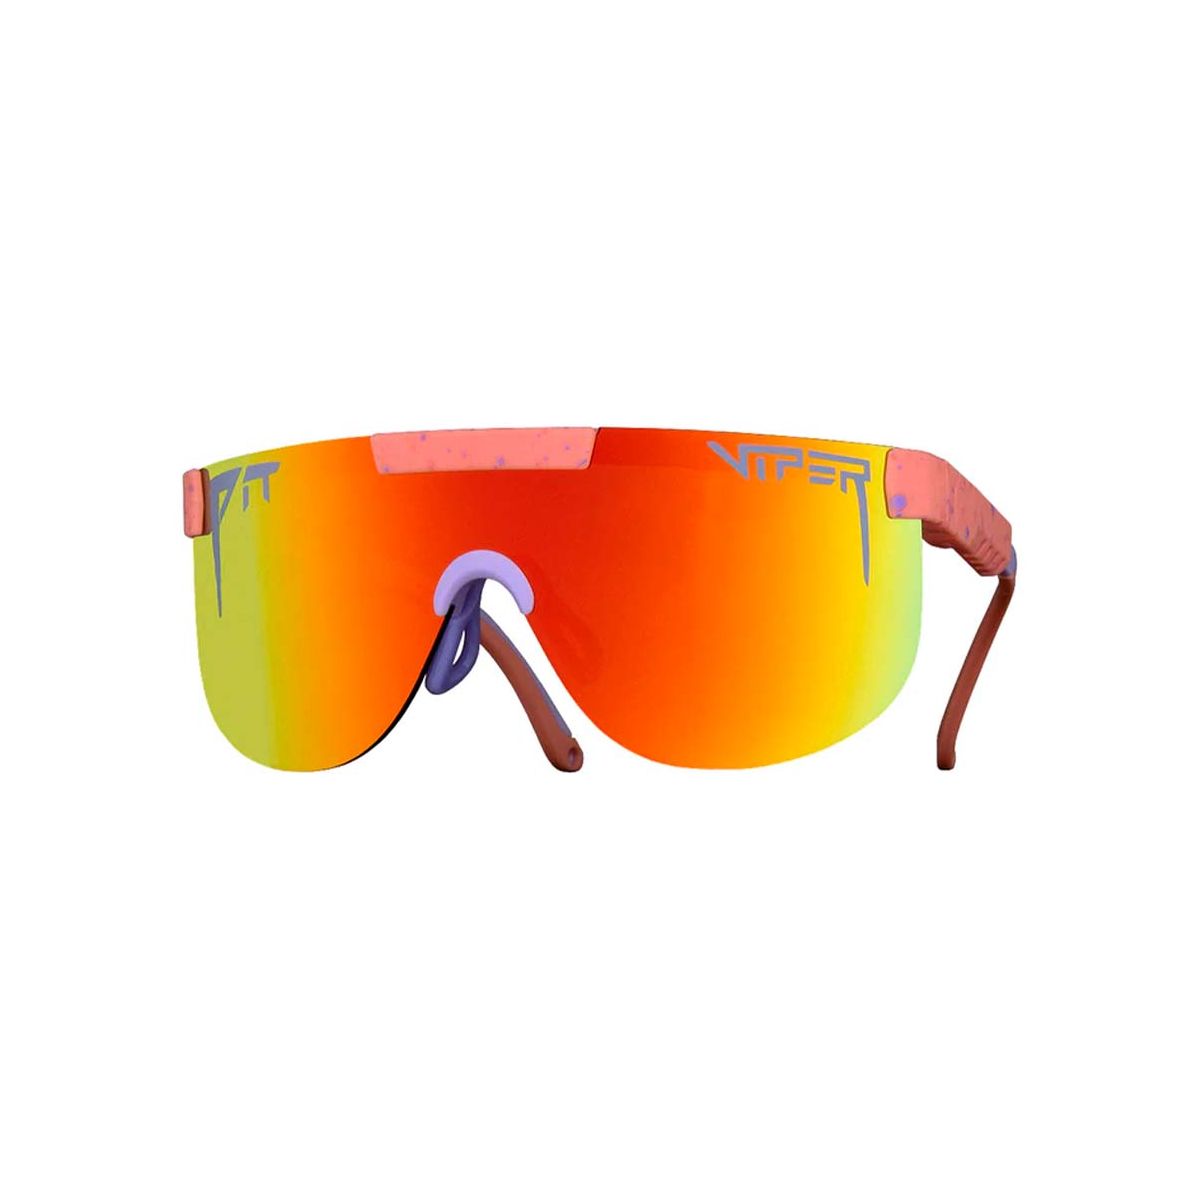 Gafas de sol para bicicleta o de playa Pit Viper The Slammin elliptical con cristal rojo y amarillo